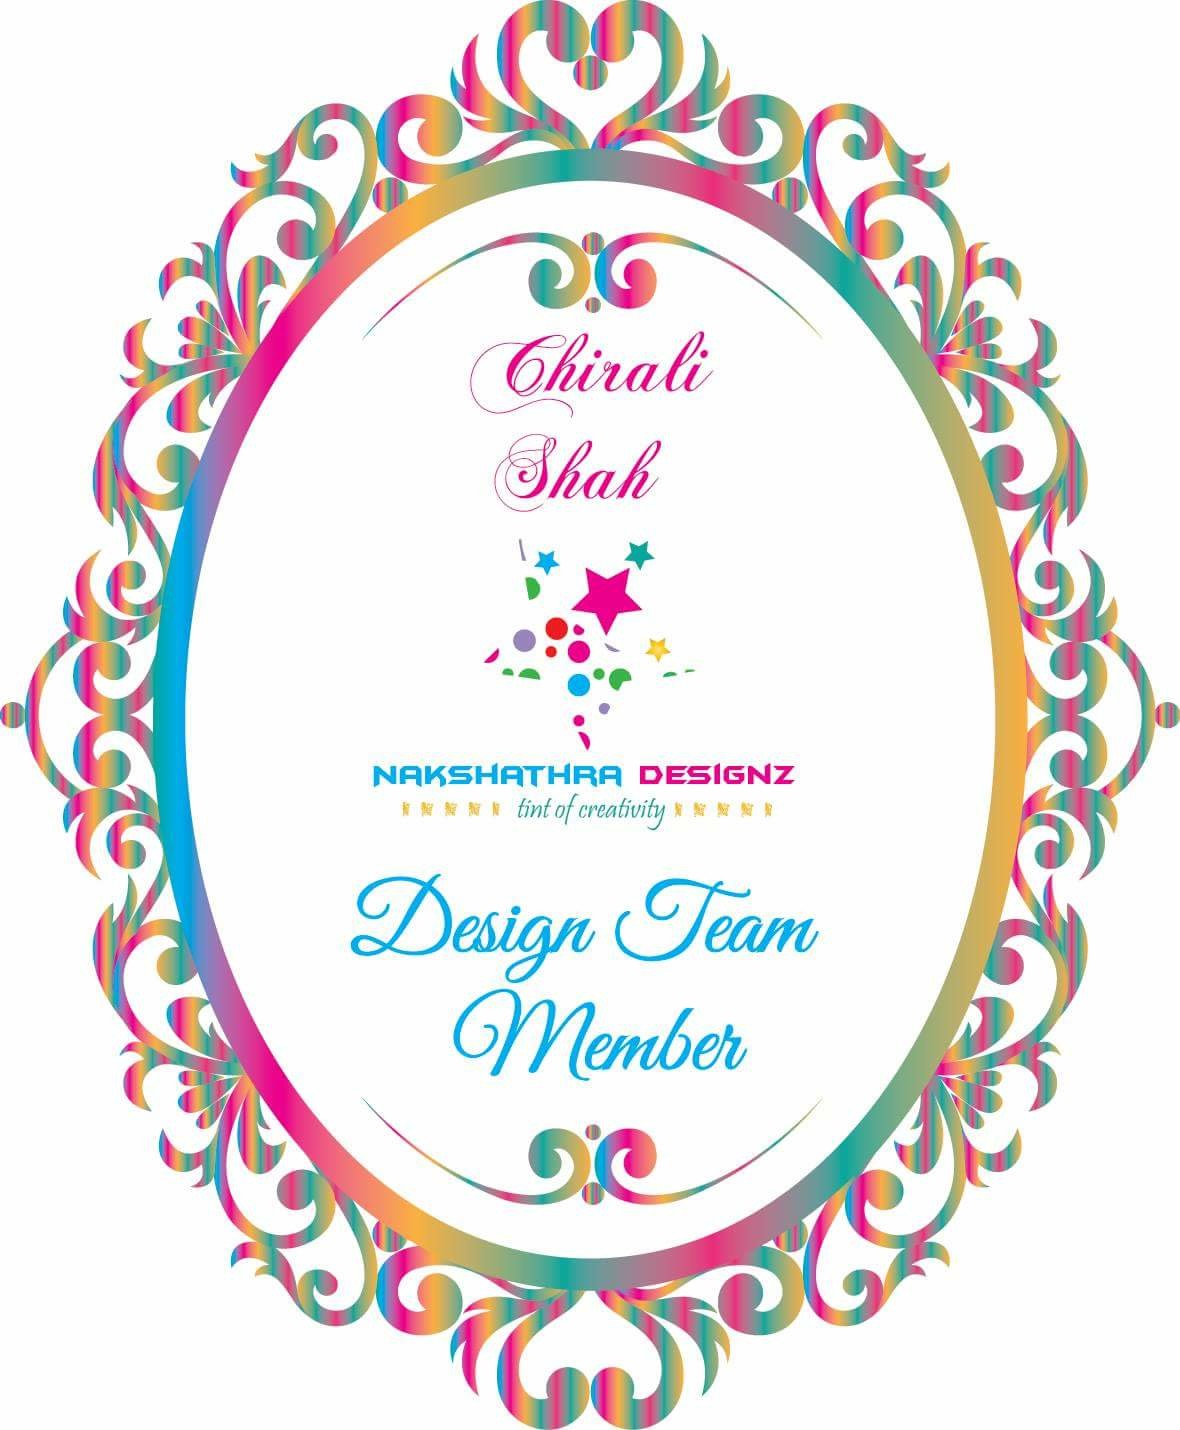 I design for Nakshathra Designz